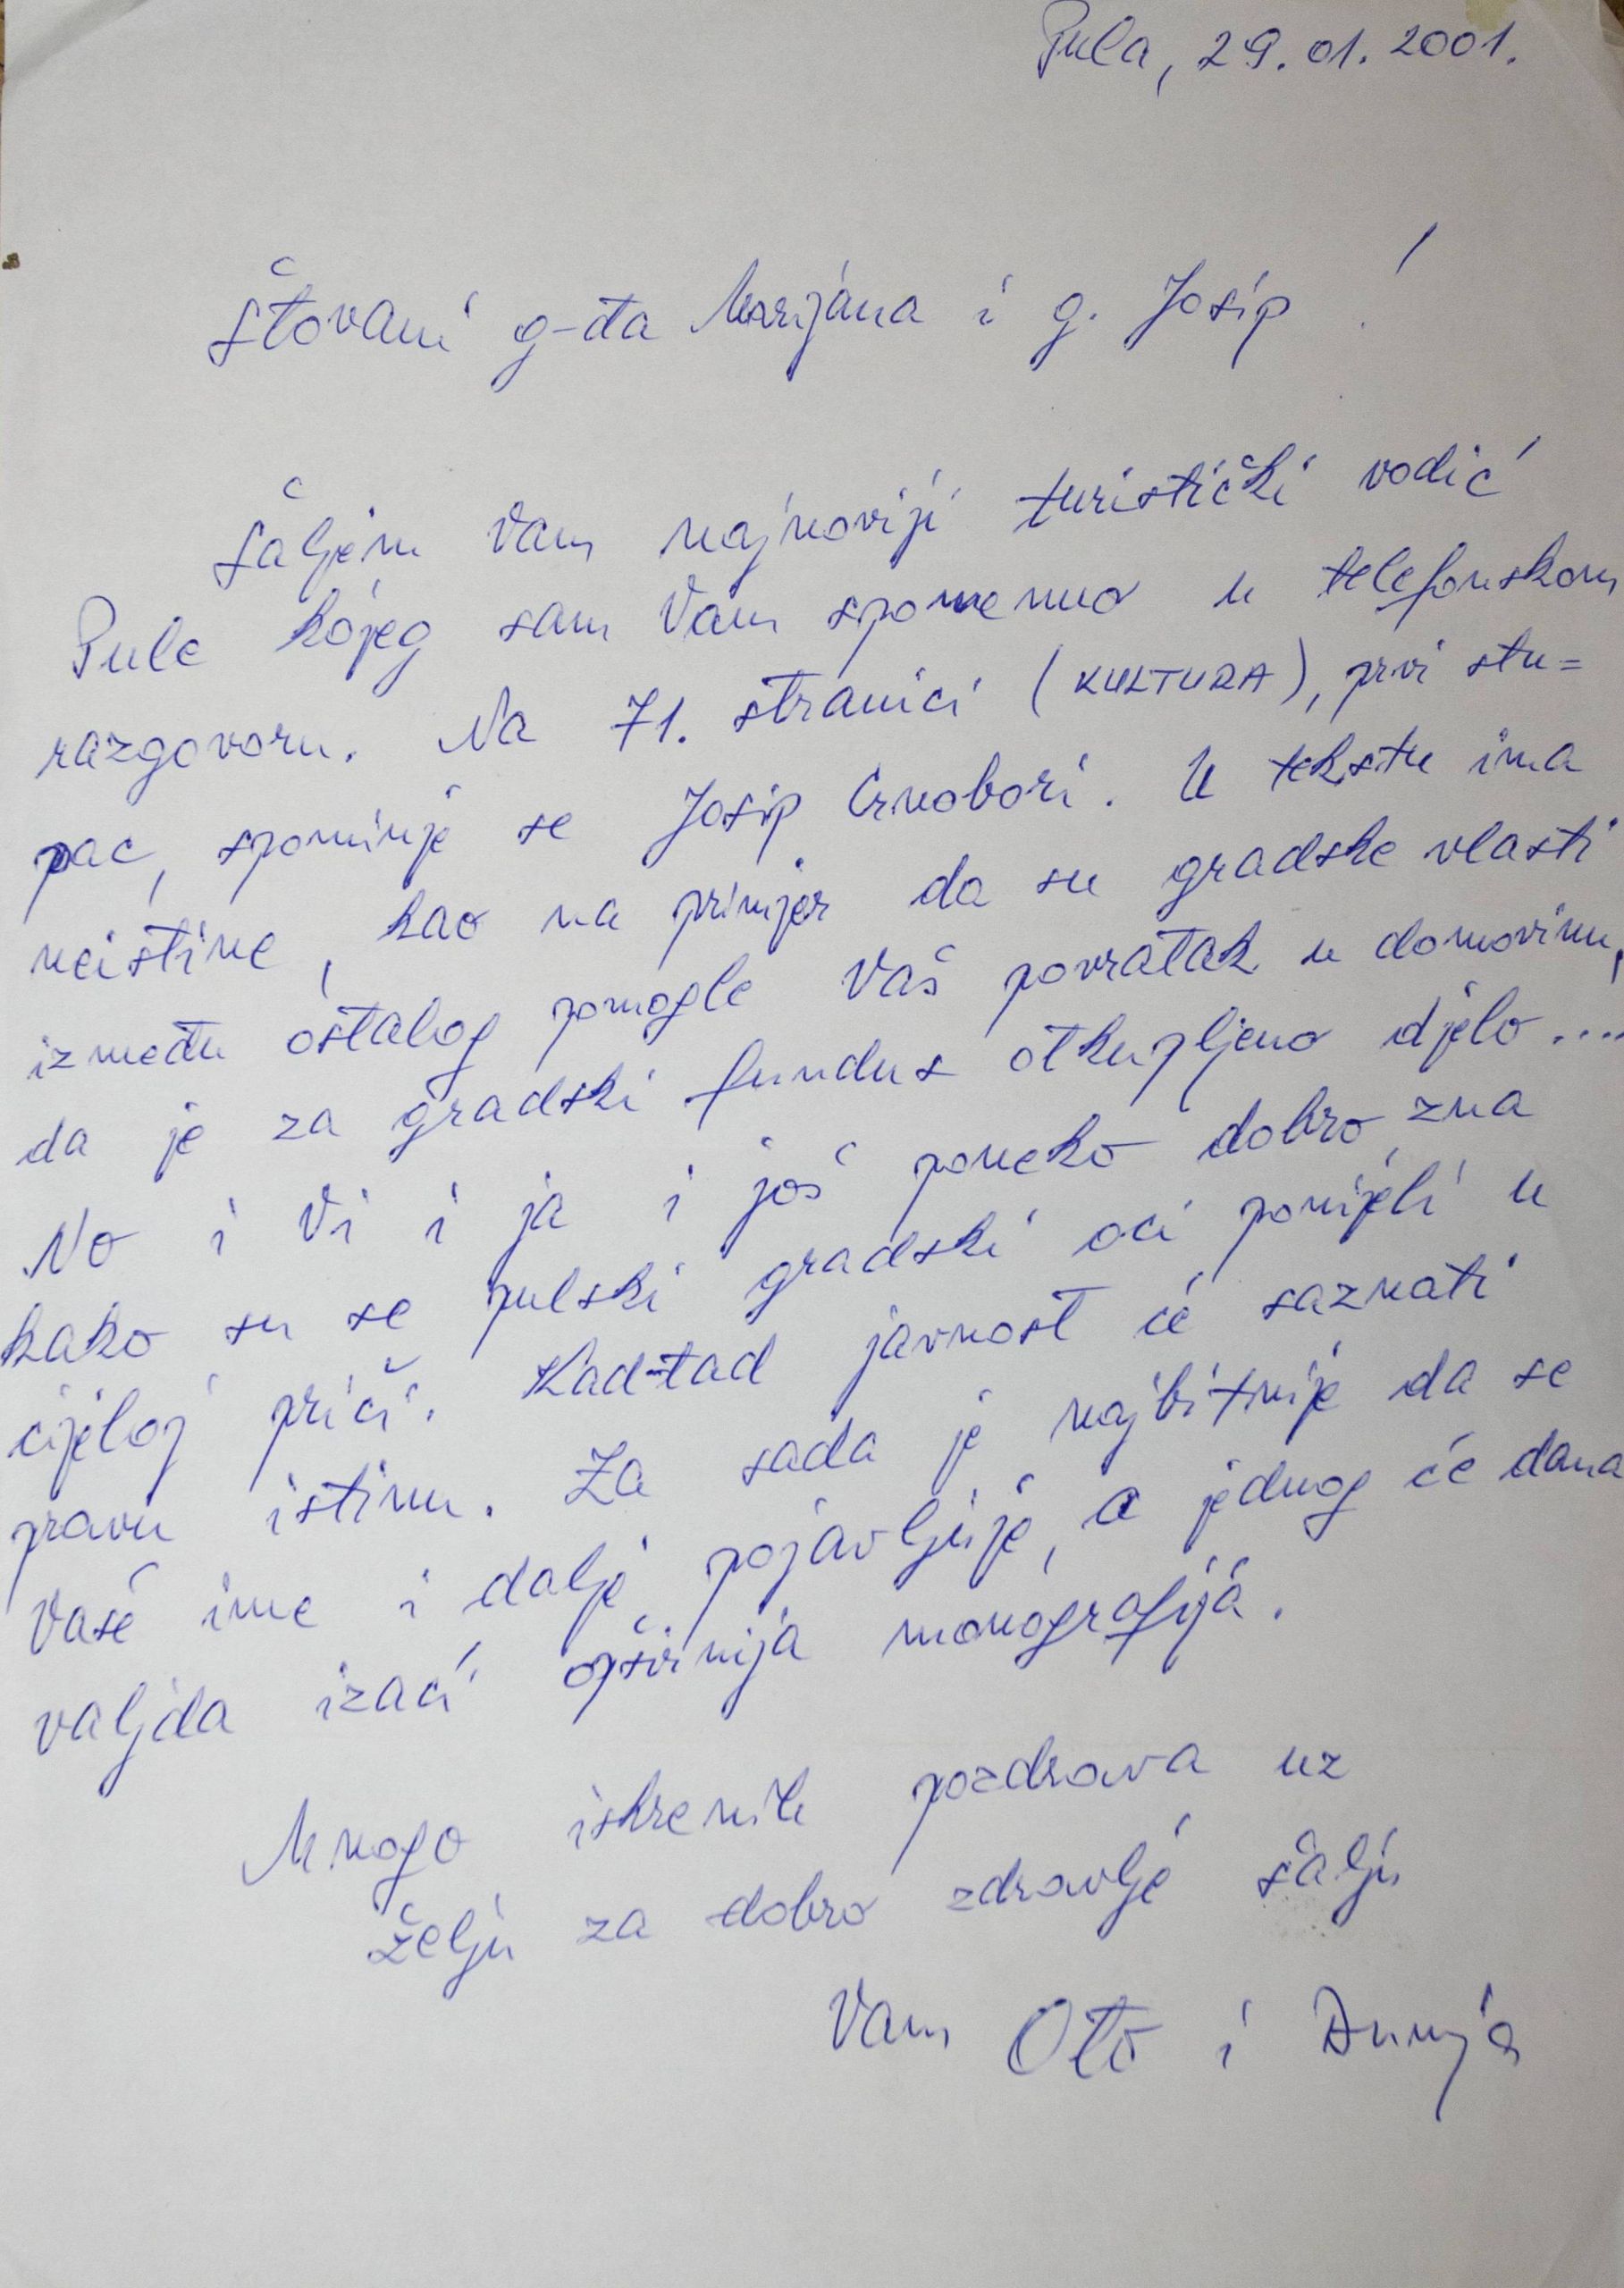 Pismo Ota i Dunje Širec Marijani i Josipu Crnoboriju, 29. 1. 2001.